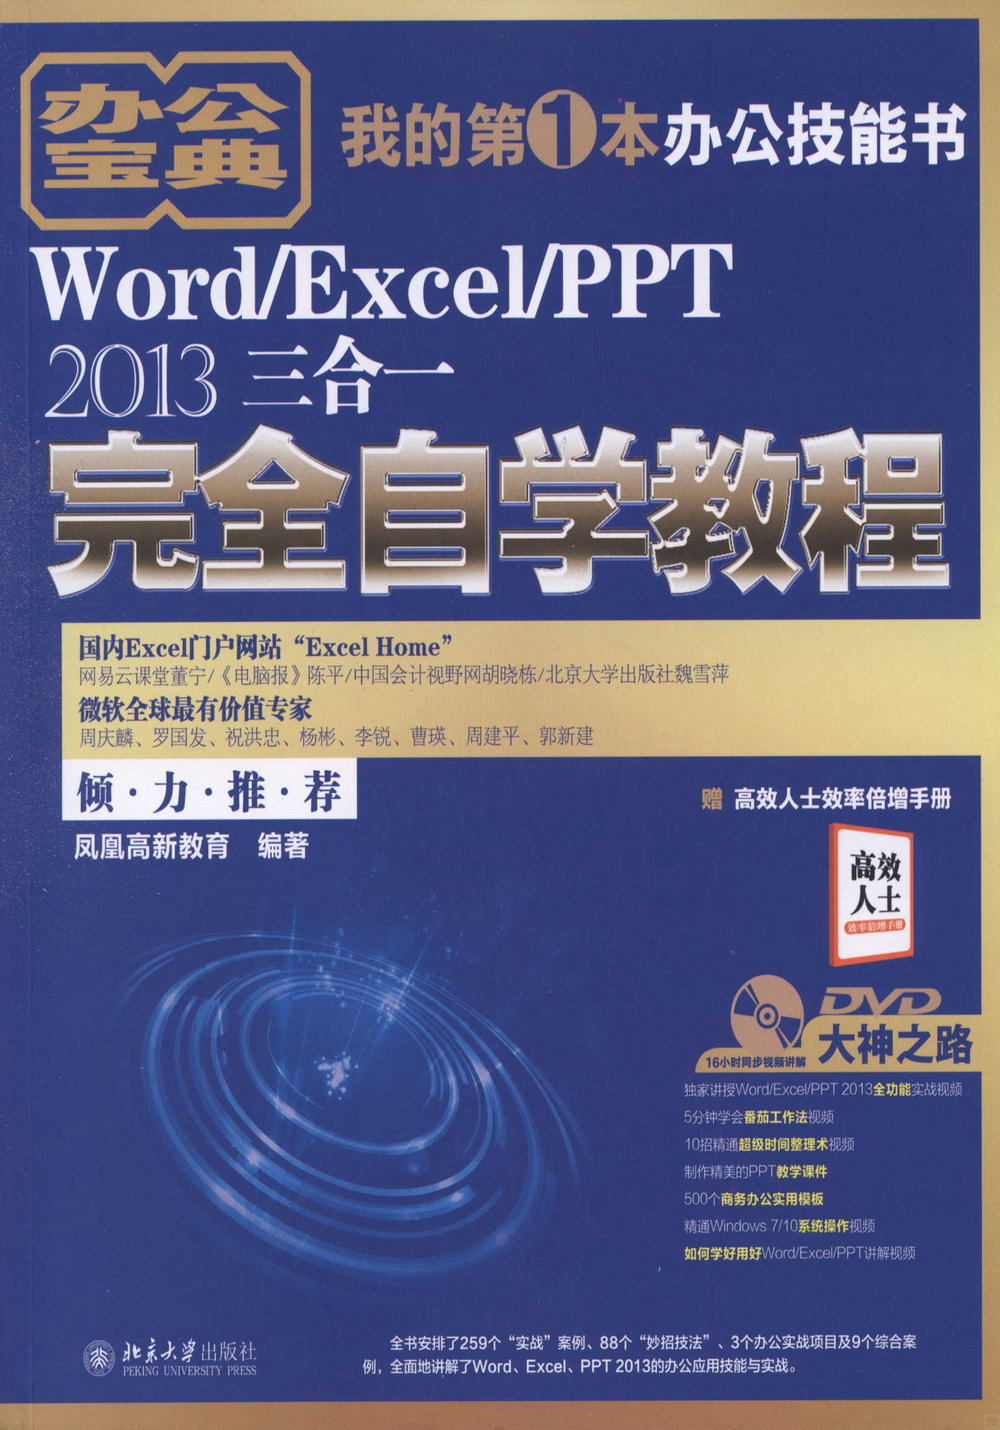 Word/Excel/PPT 2013三合一完全自學教程